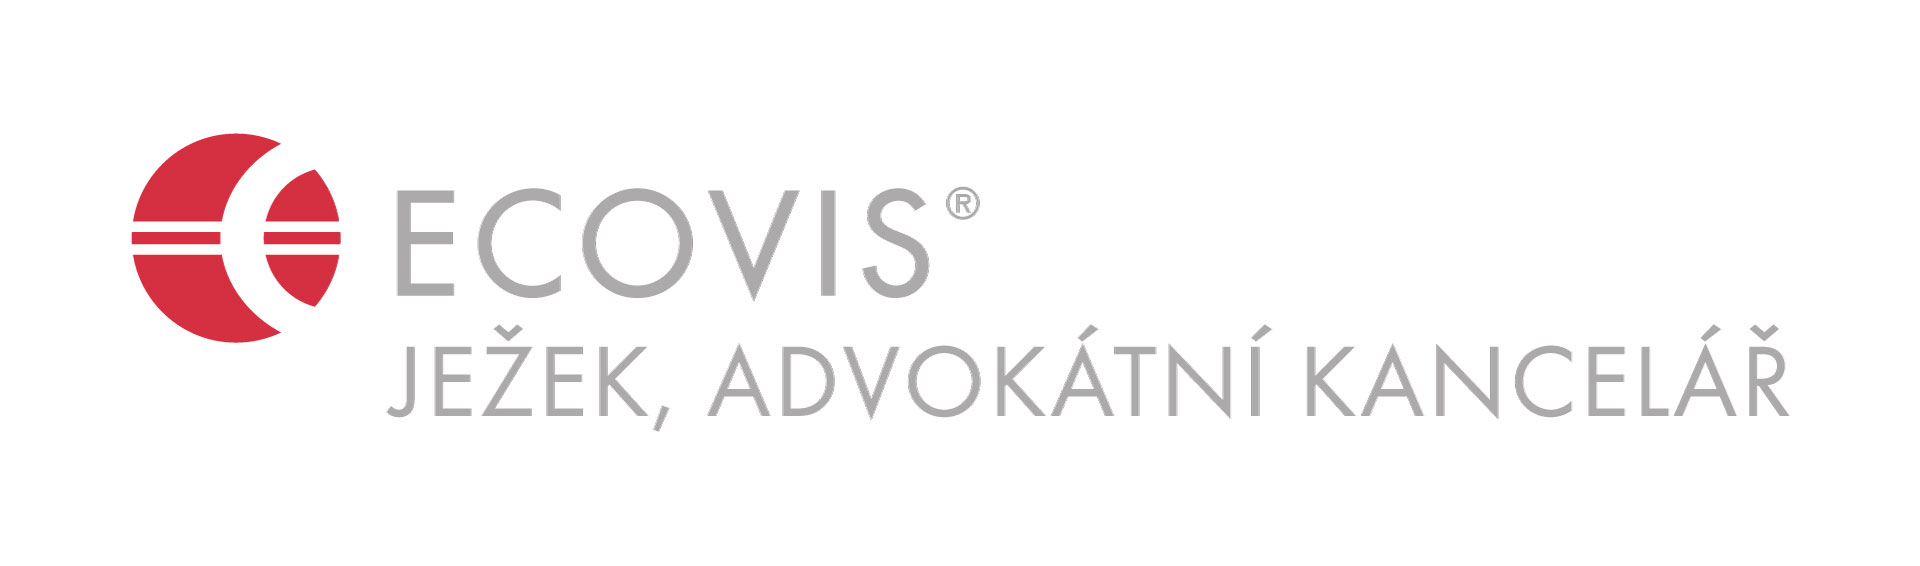 logo ECOVIS ježek, advokátní kancelář s.r.o.